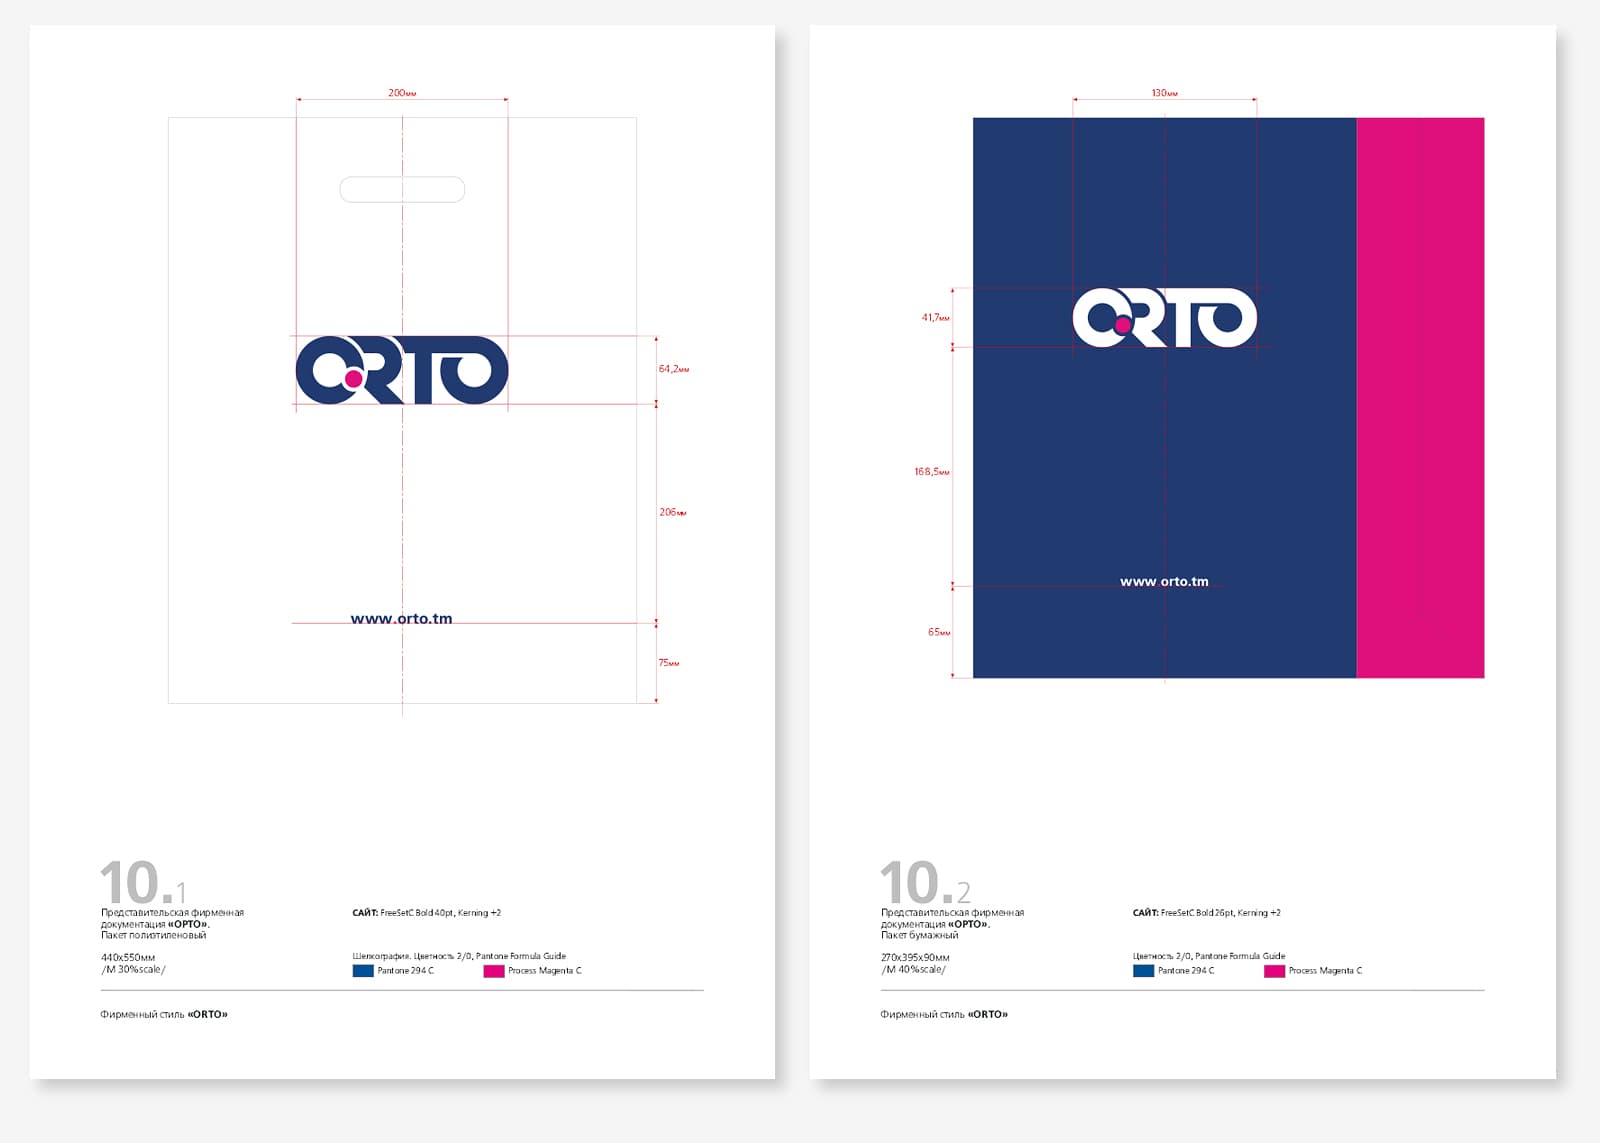 Разработка дизайна бренда, фирменного стиля и гайдлайна для производителя ортопедической продукции «ORTO»